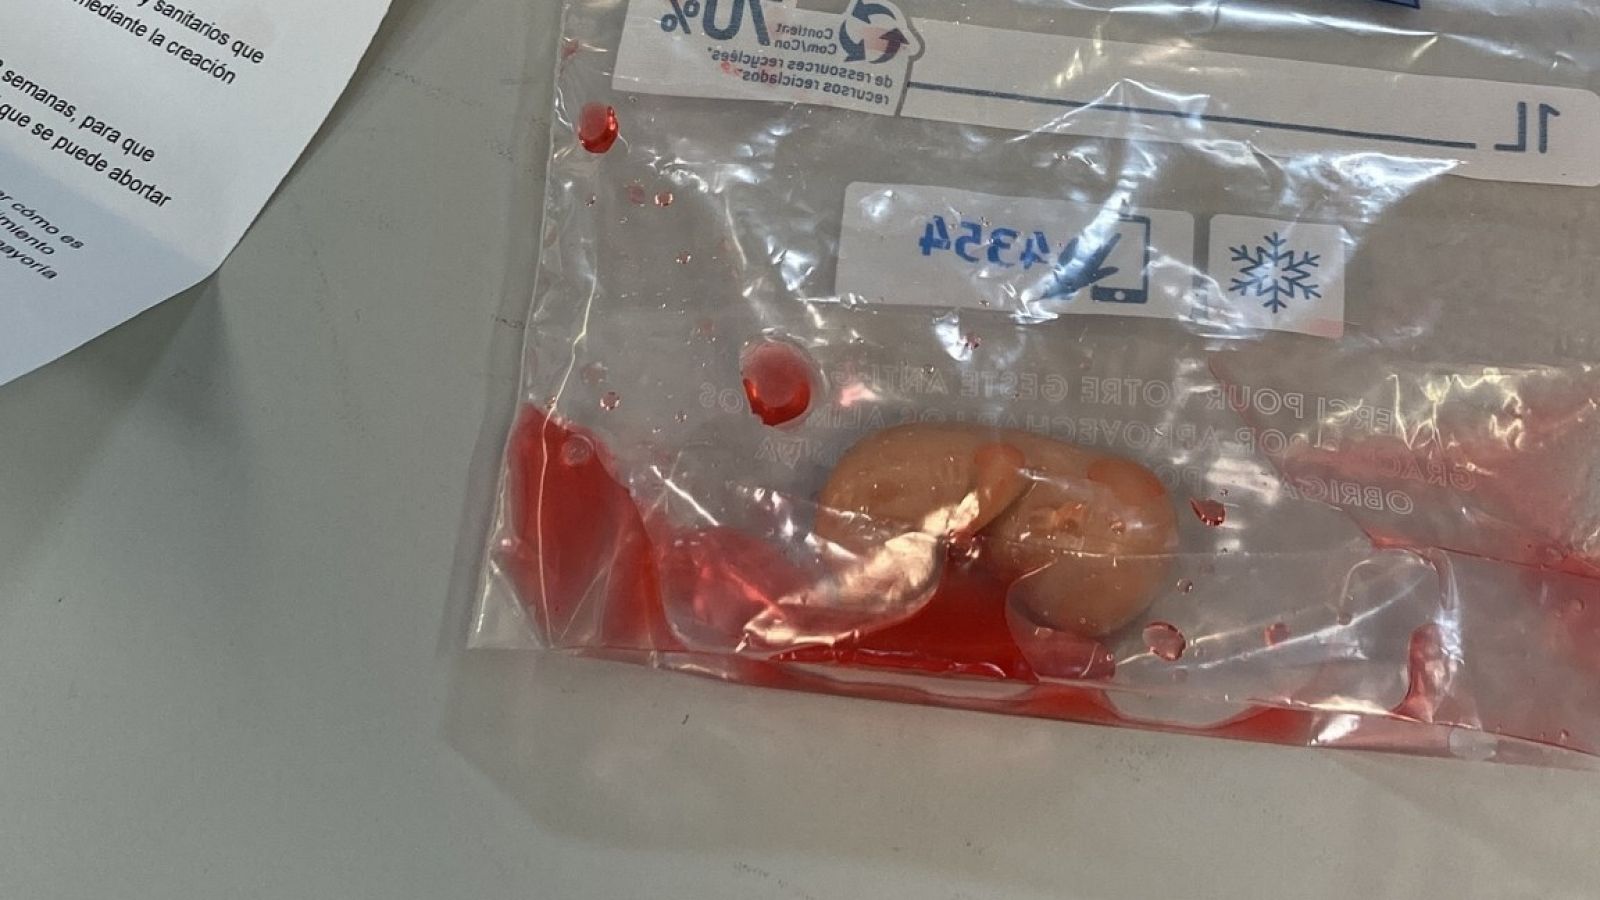 Una de las bolsas con una réplica de un feto de 12 semanas